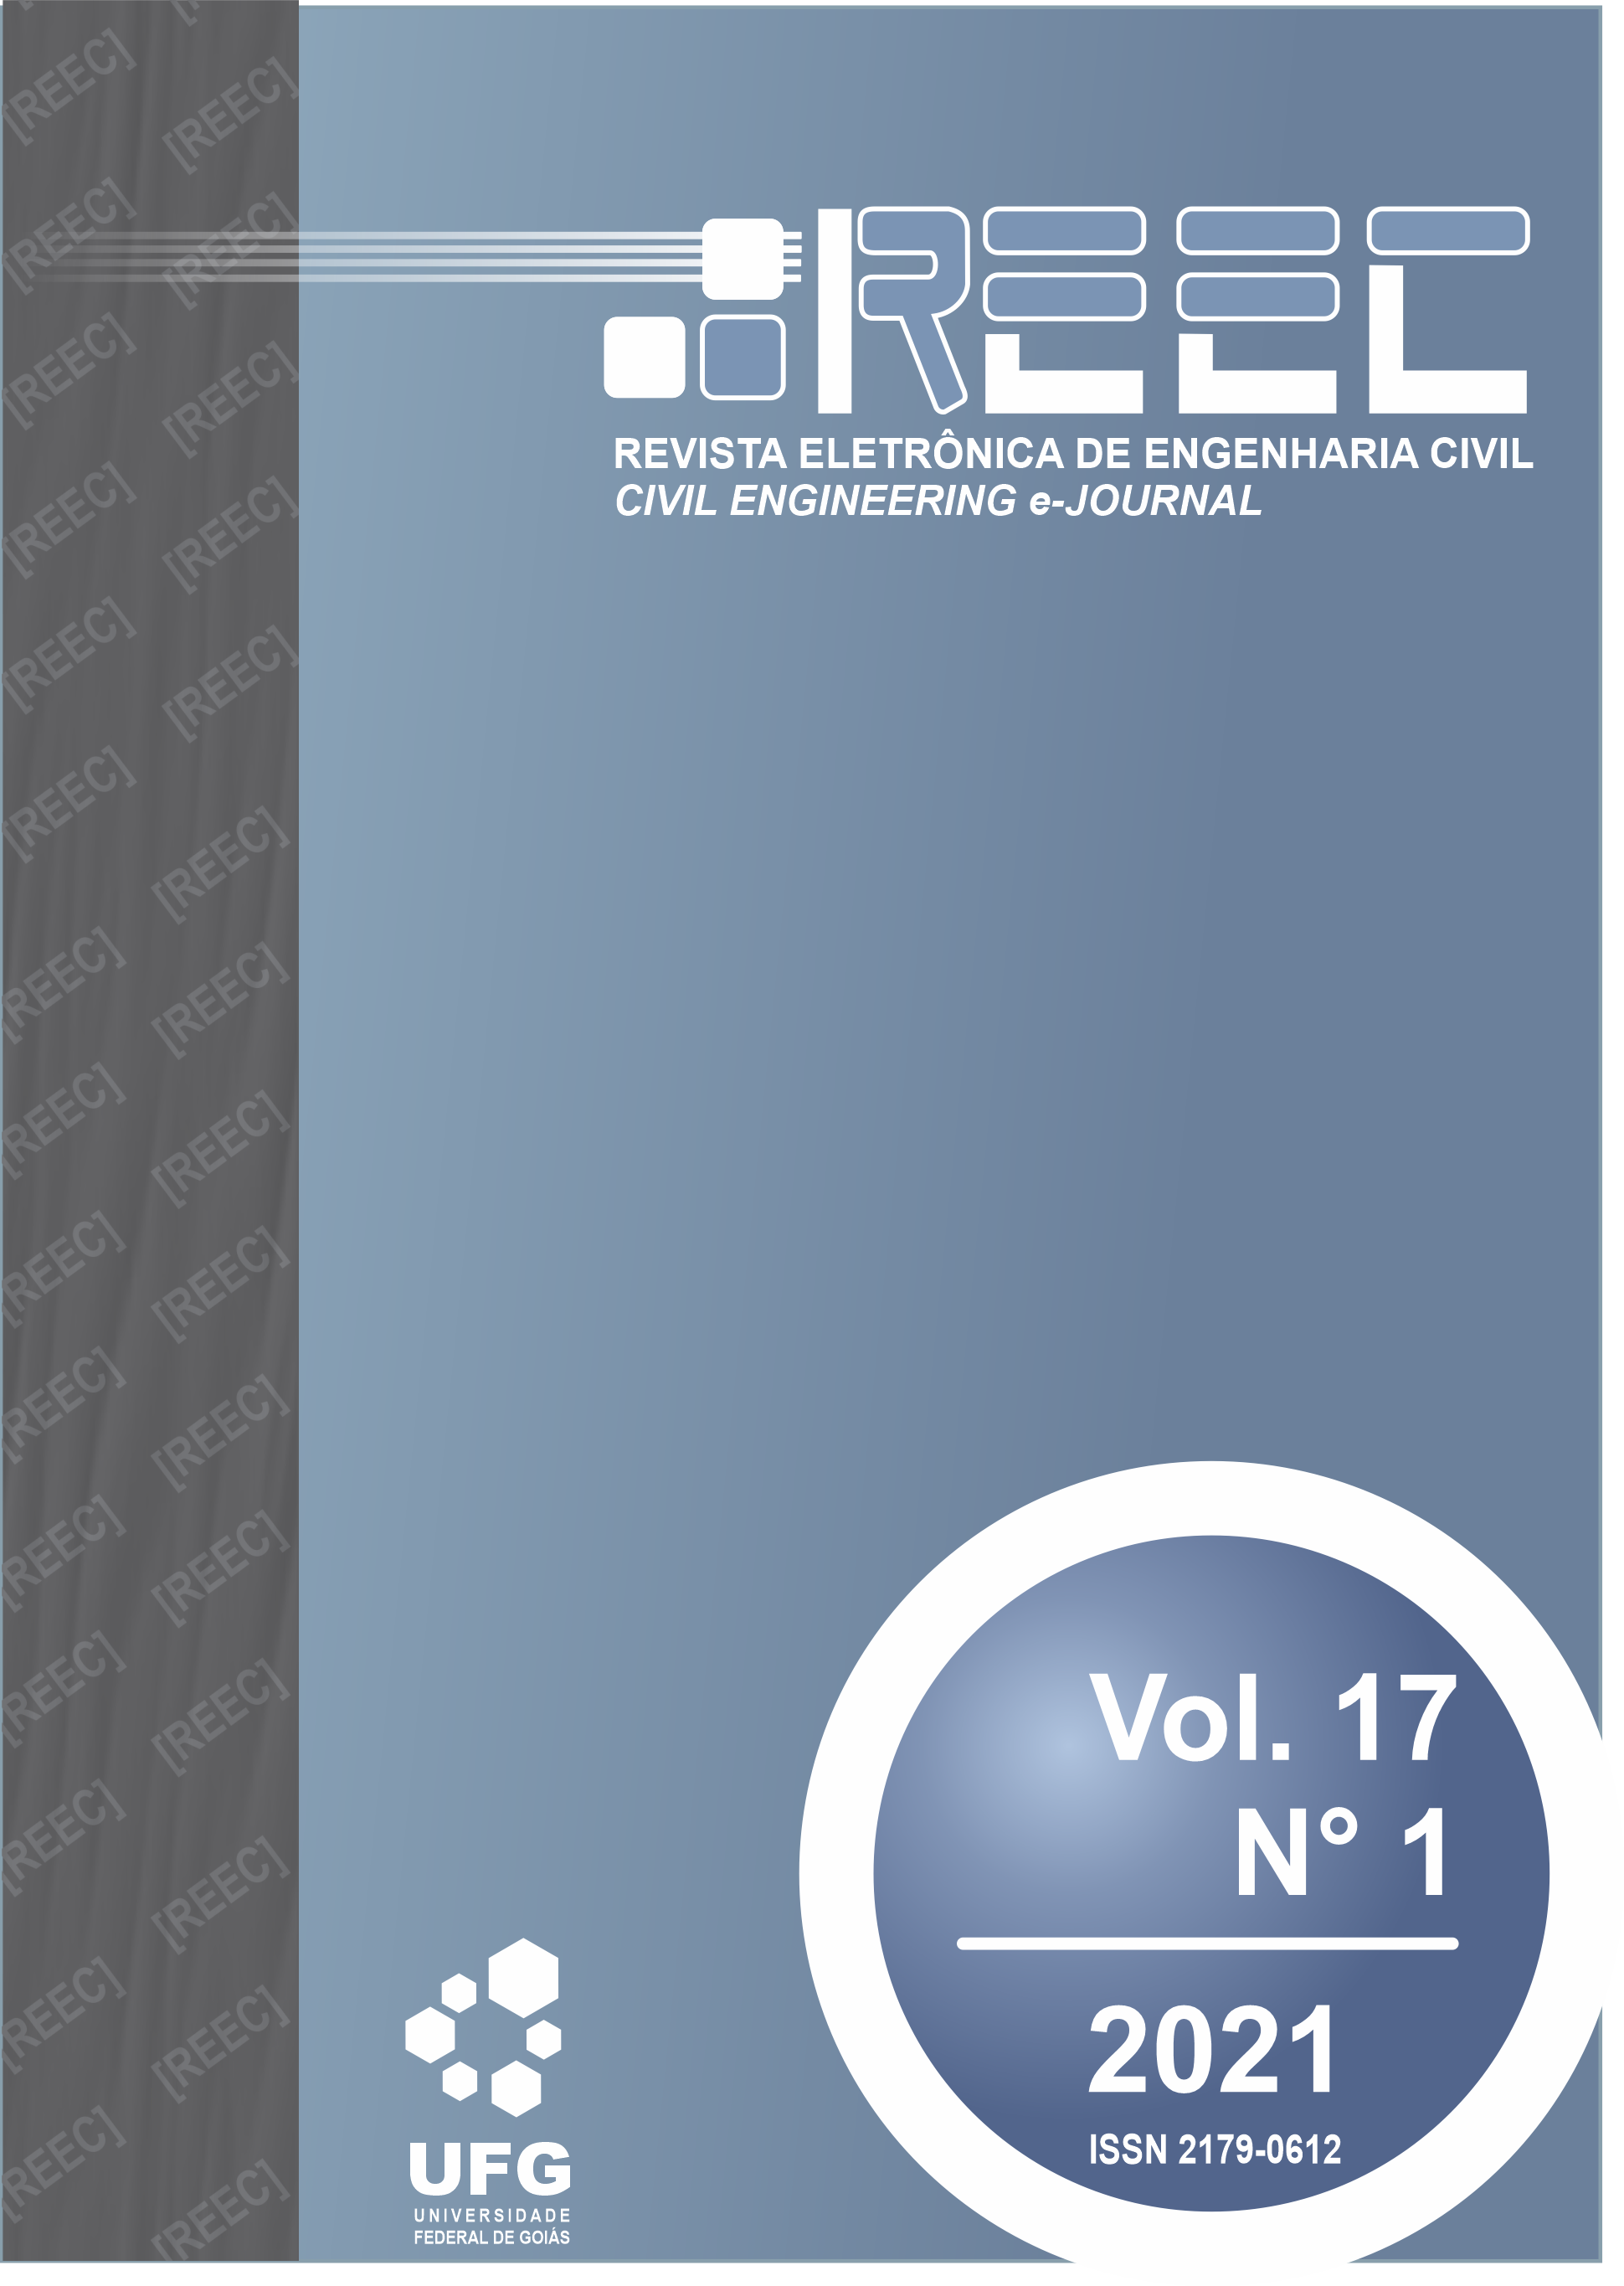 					Visualizar v. 17 n. 1 (2021): [REEC] Revista Eletrônica de Engenharia Civil - Vol. 17, n° 1, 2021
				